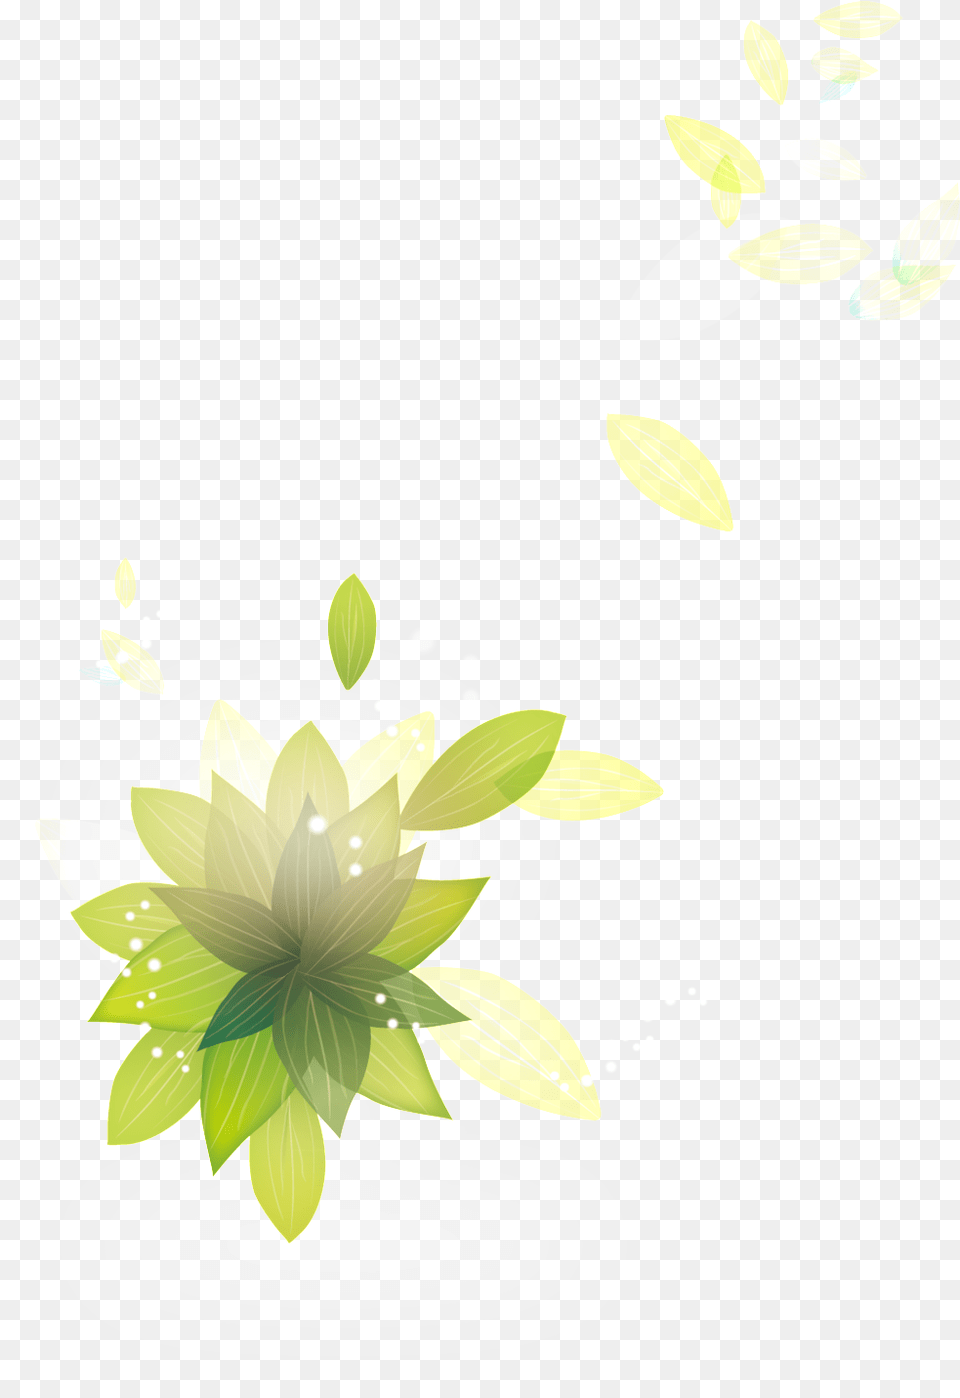 Leaf Sacred Lotus, Art, Floral Design, Pattern, Graphics Free Png